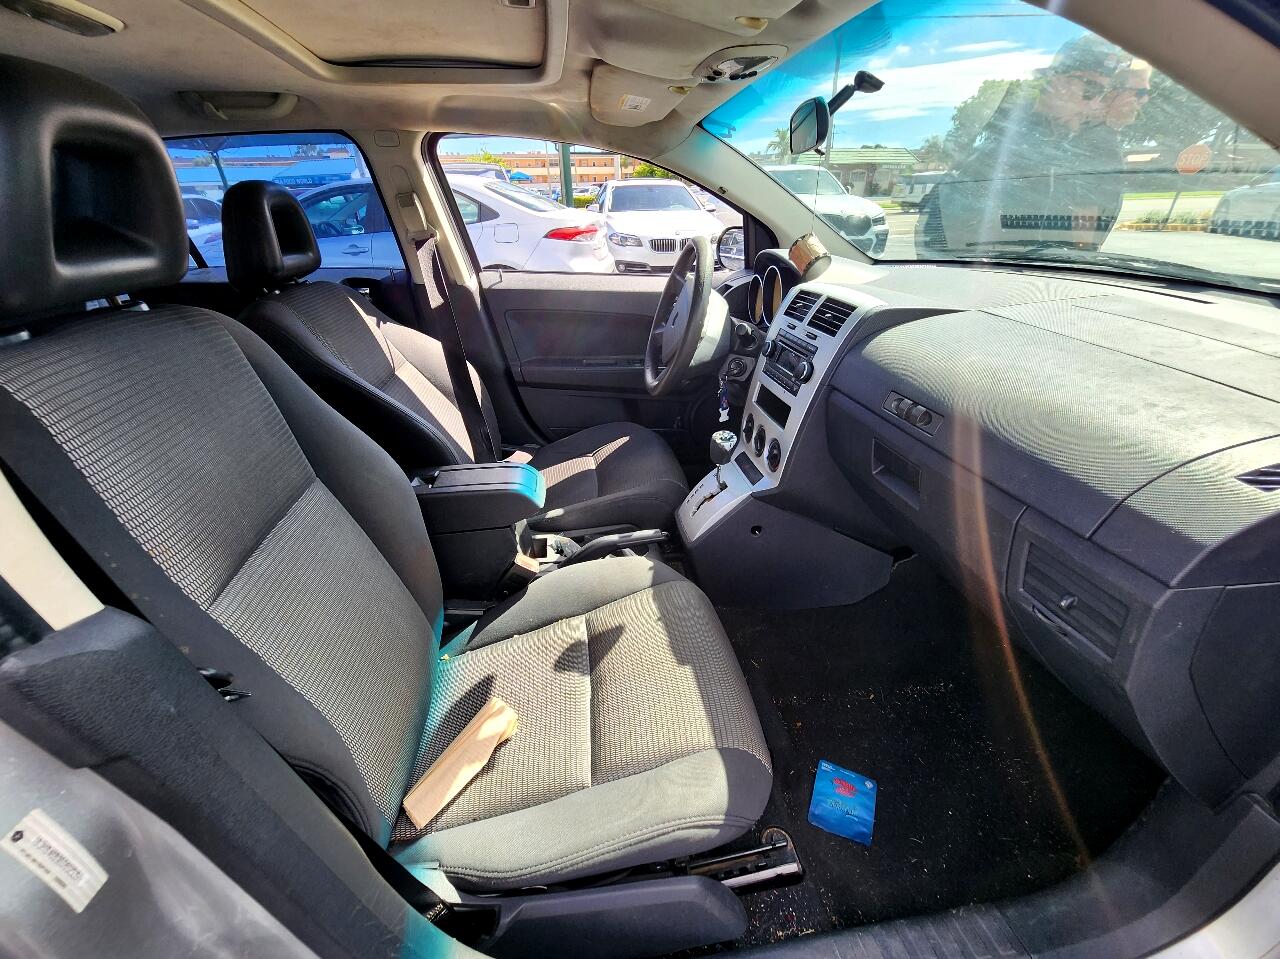 2008 DODGE Caliber Hatchback - $1,999